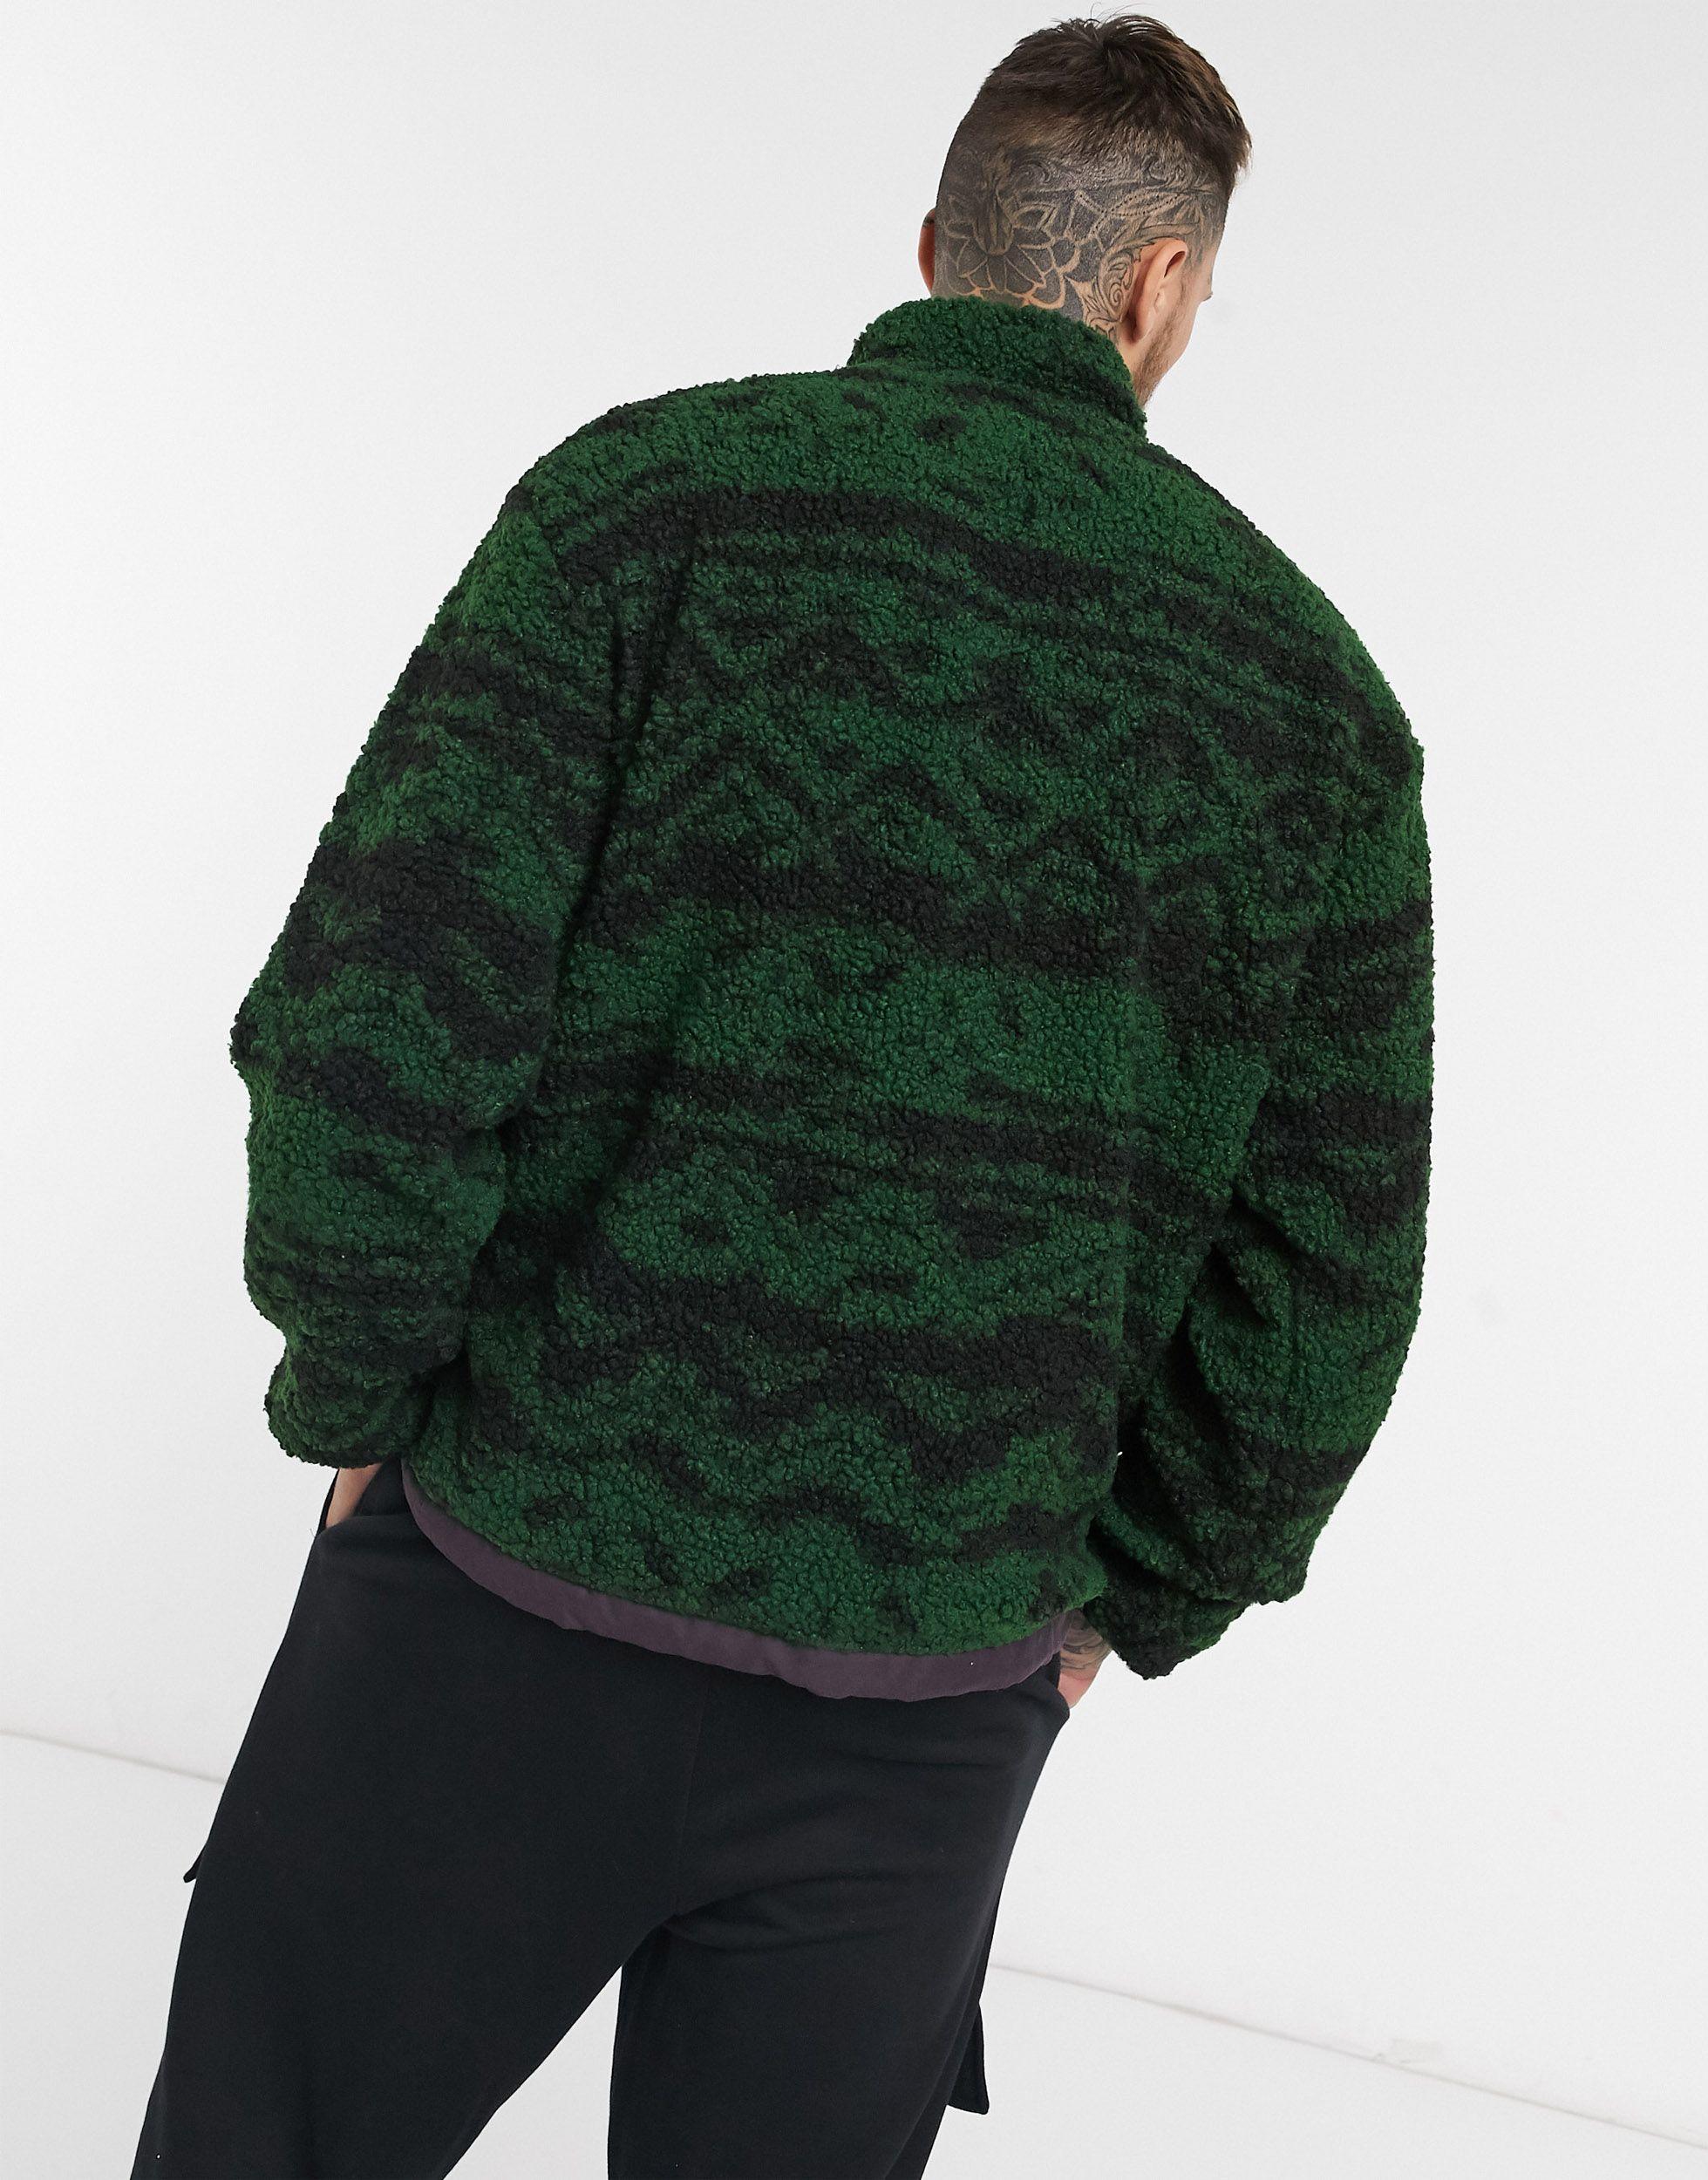 Reebok Classics Printed Half Zip Fleece Jacket in Green for Men - Lyst